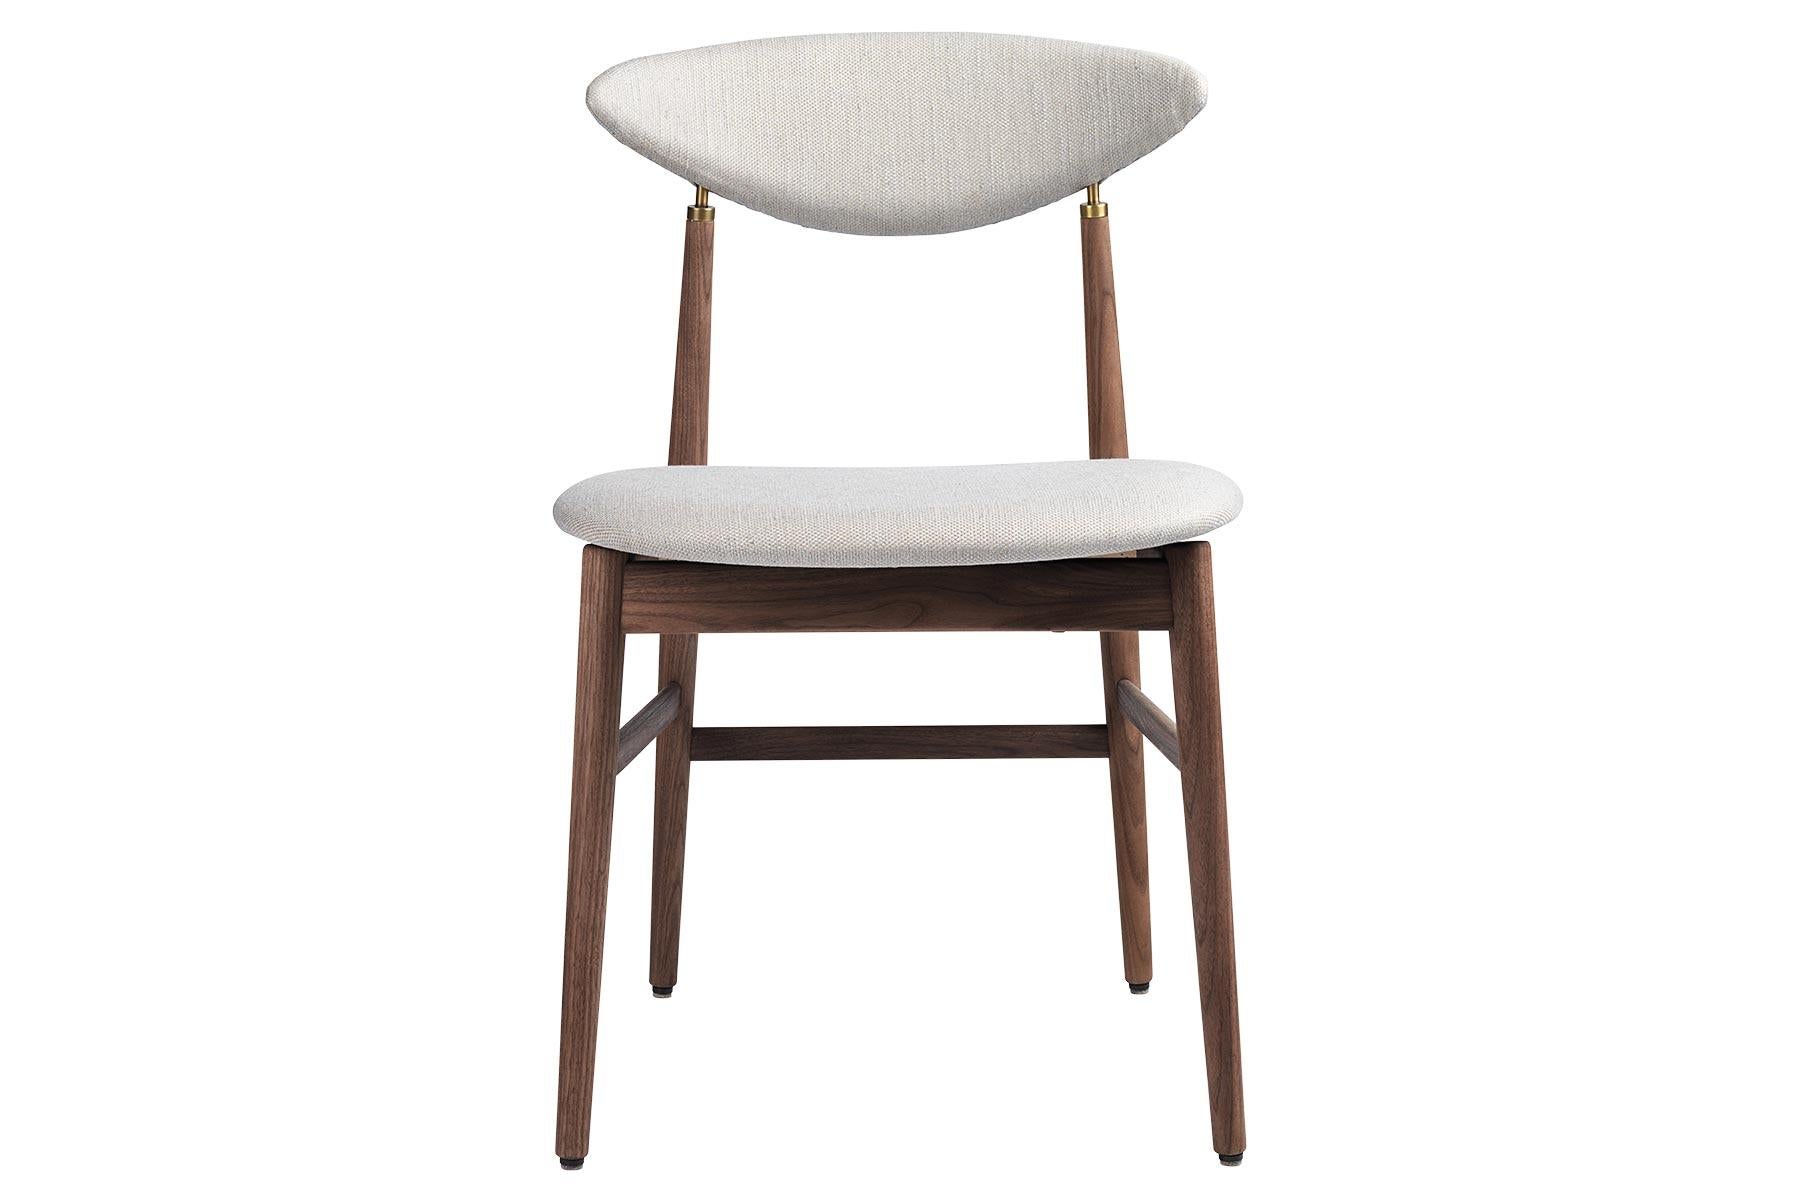 Conçue par le duo de designers GamFratesi, la chaise de salle à manger Gent se caractérise par la contradiction entre l'élégance scandinave et les lignes dynamiques italiennes. Fortement liée à la chaise Masculo, la nouvelle chaise de salle à manger